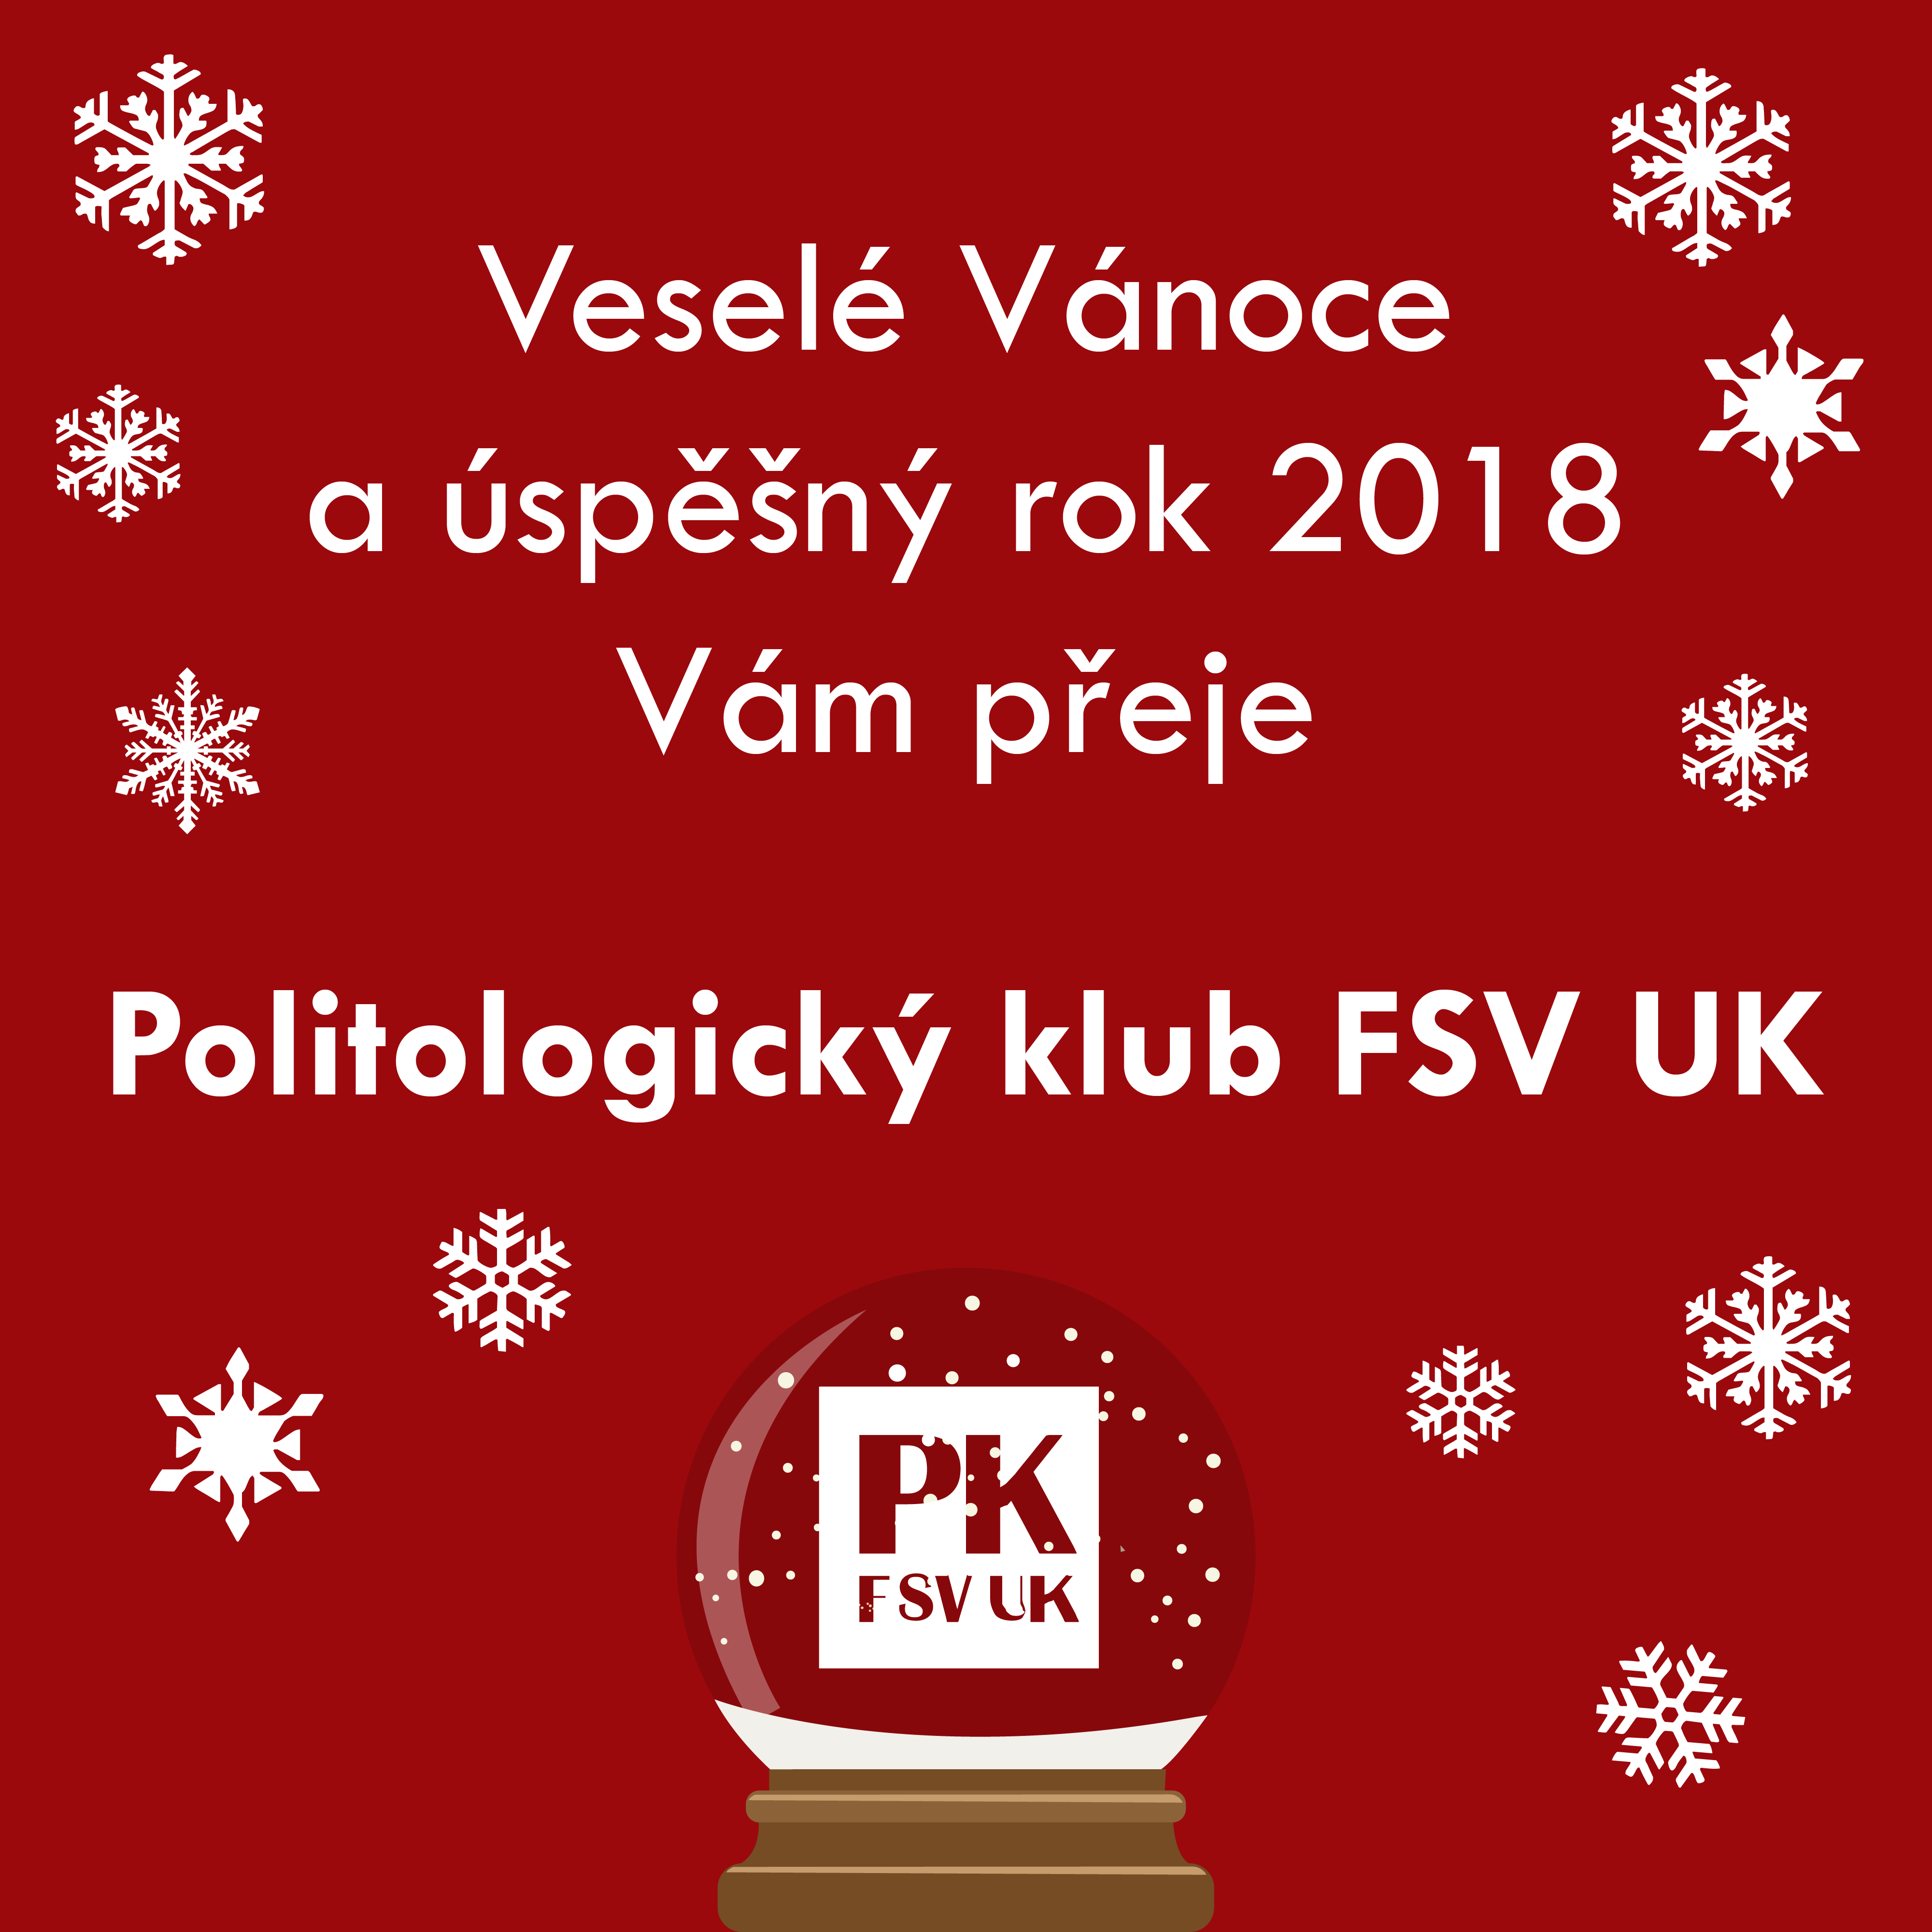 Veselé Vánoce a šťastný nový rok přeje Politologický klub FSV UK